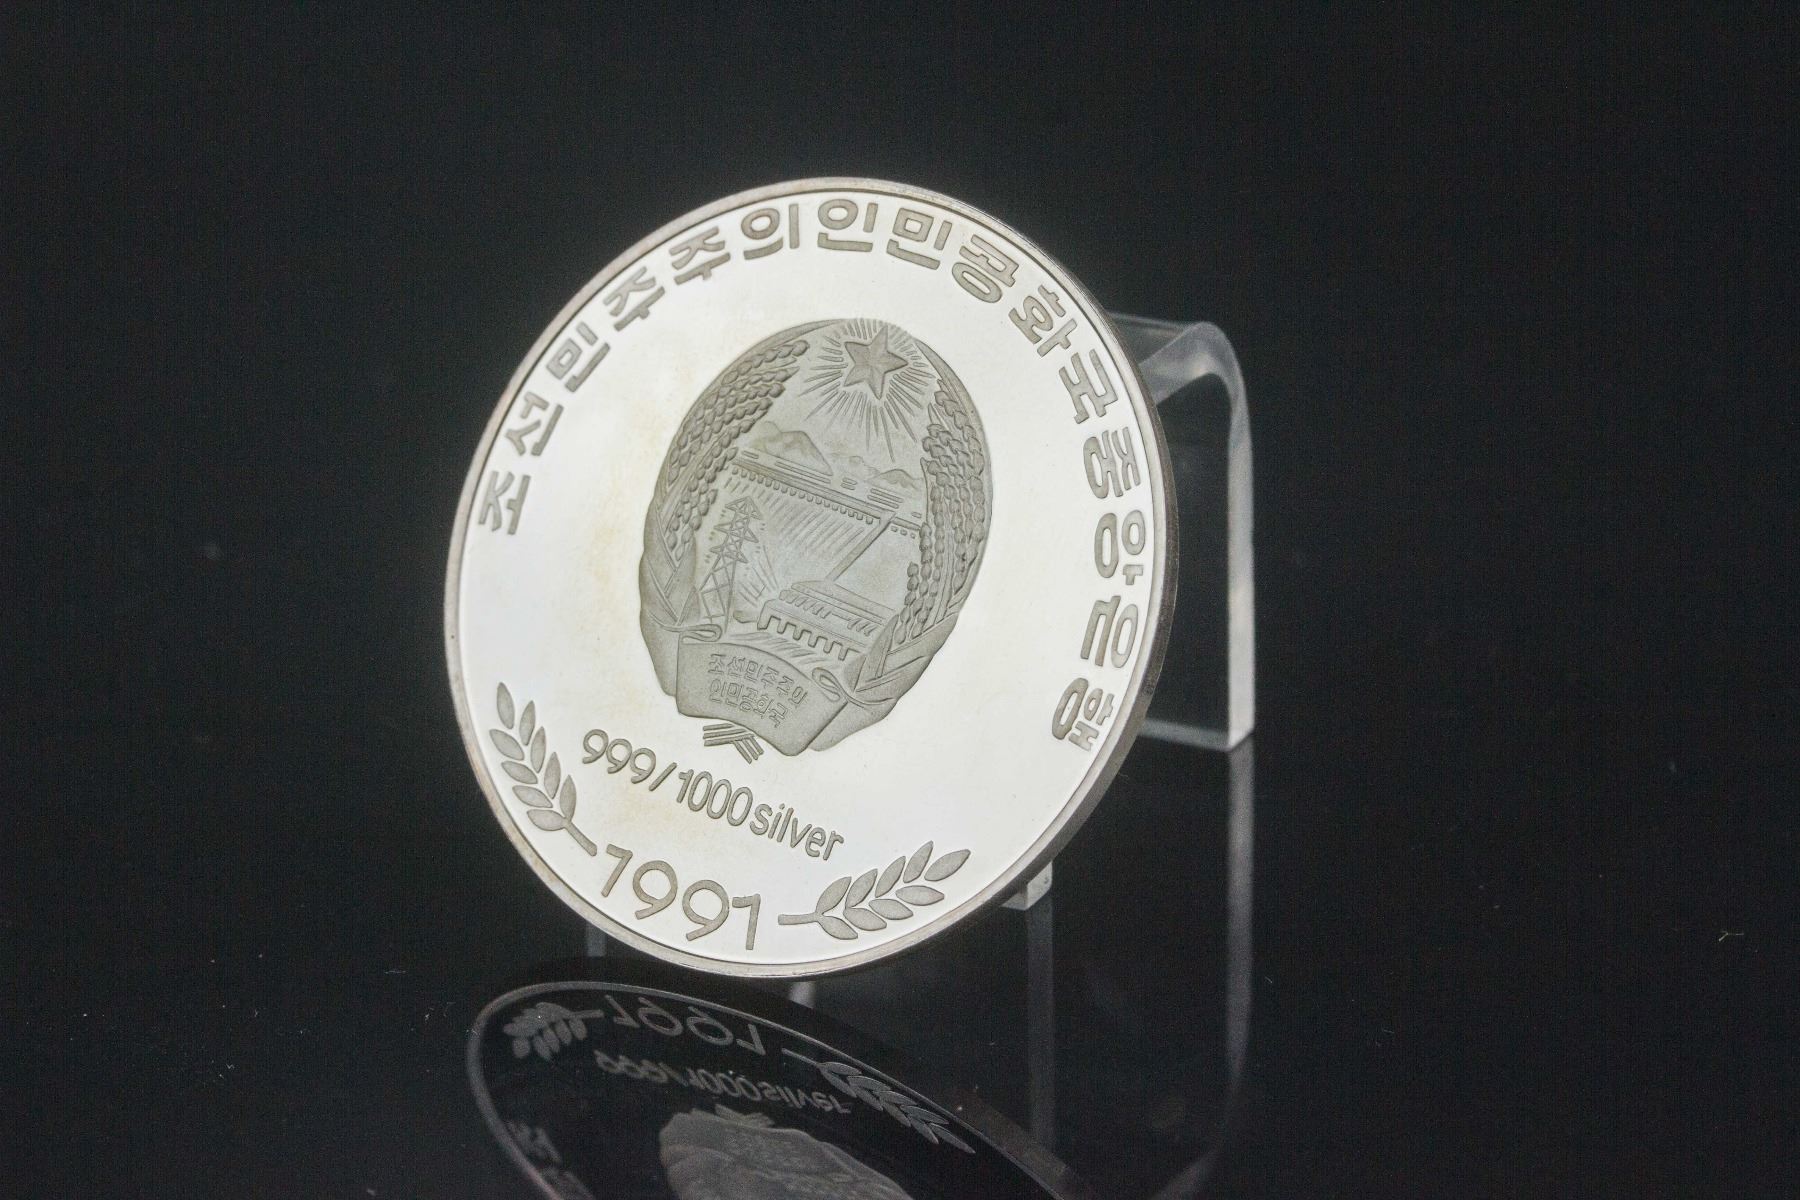 Silver coin photo